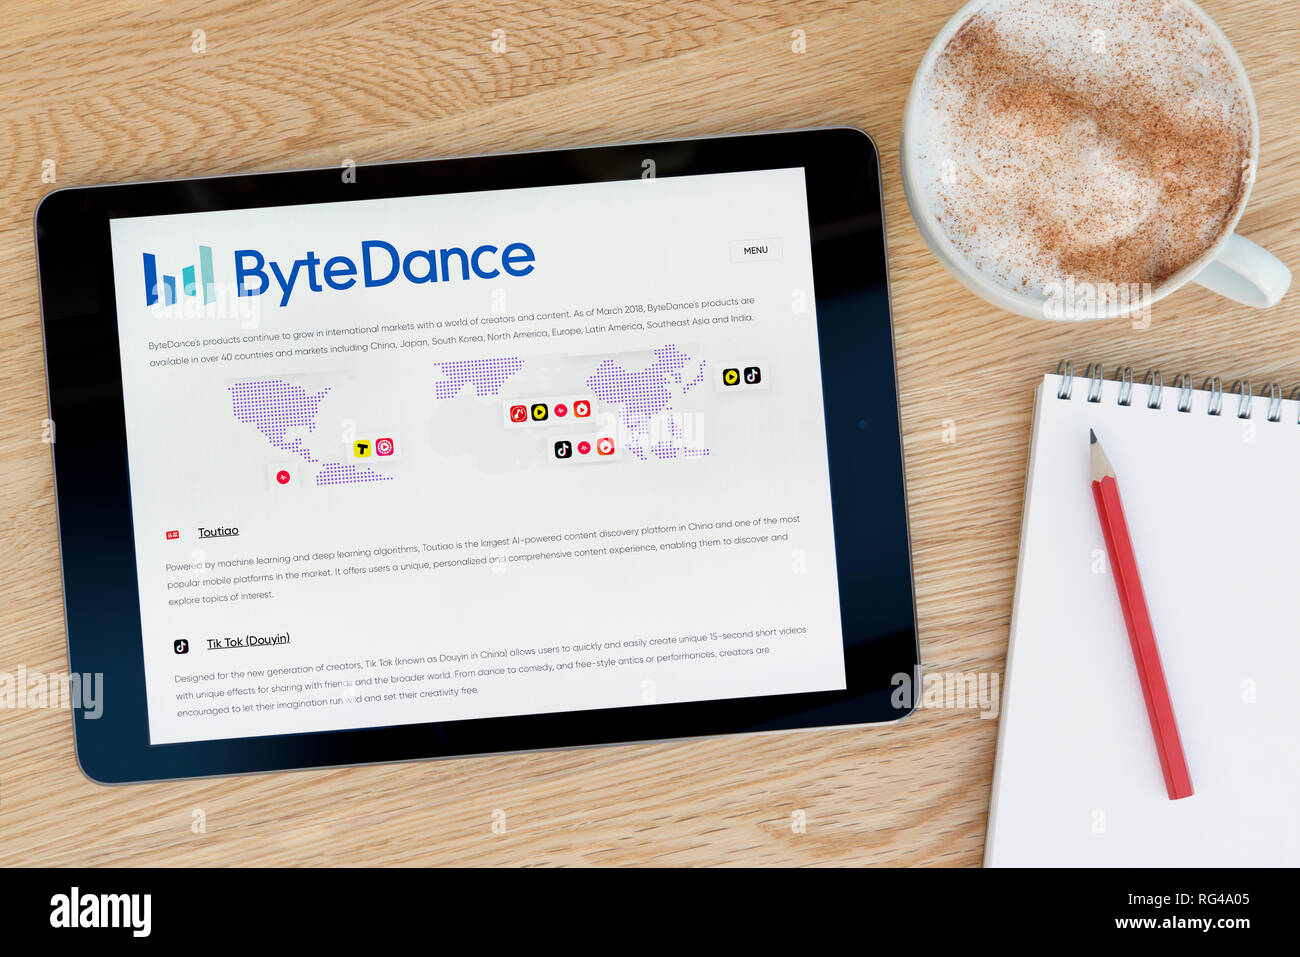 Die ByteDance website Funktionen auf einem iPad Tablet Gerät, das auf einem Tisch liegt neben einem Notizblock (nur redaktionelle Nutzung). Stockfoto